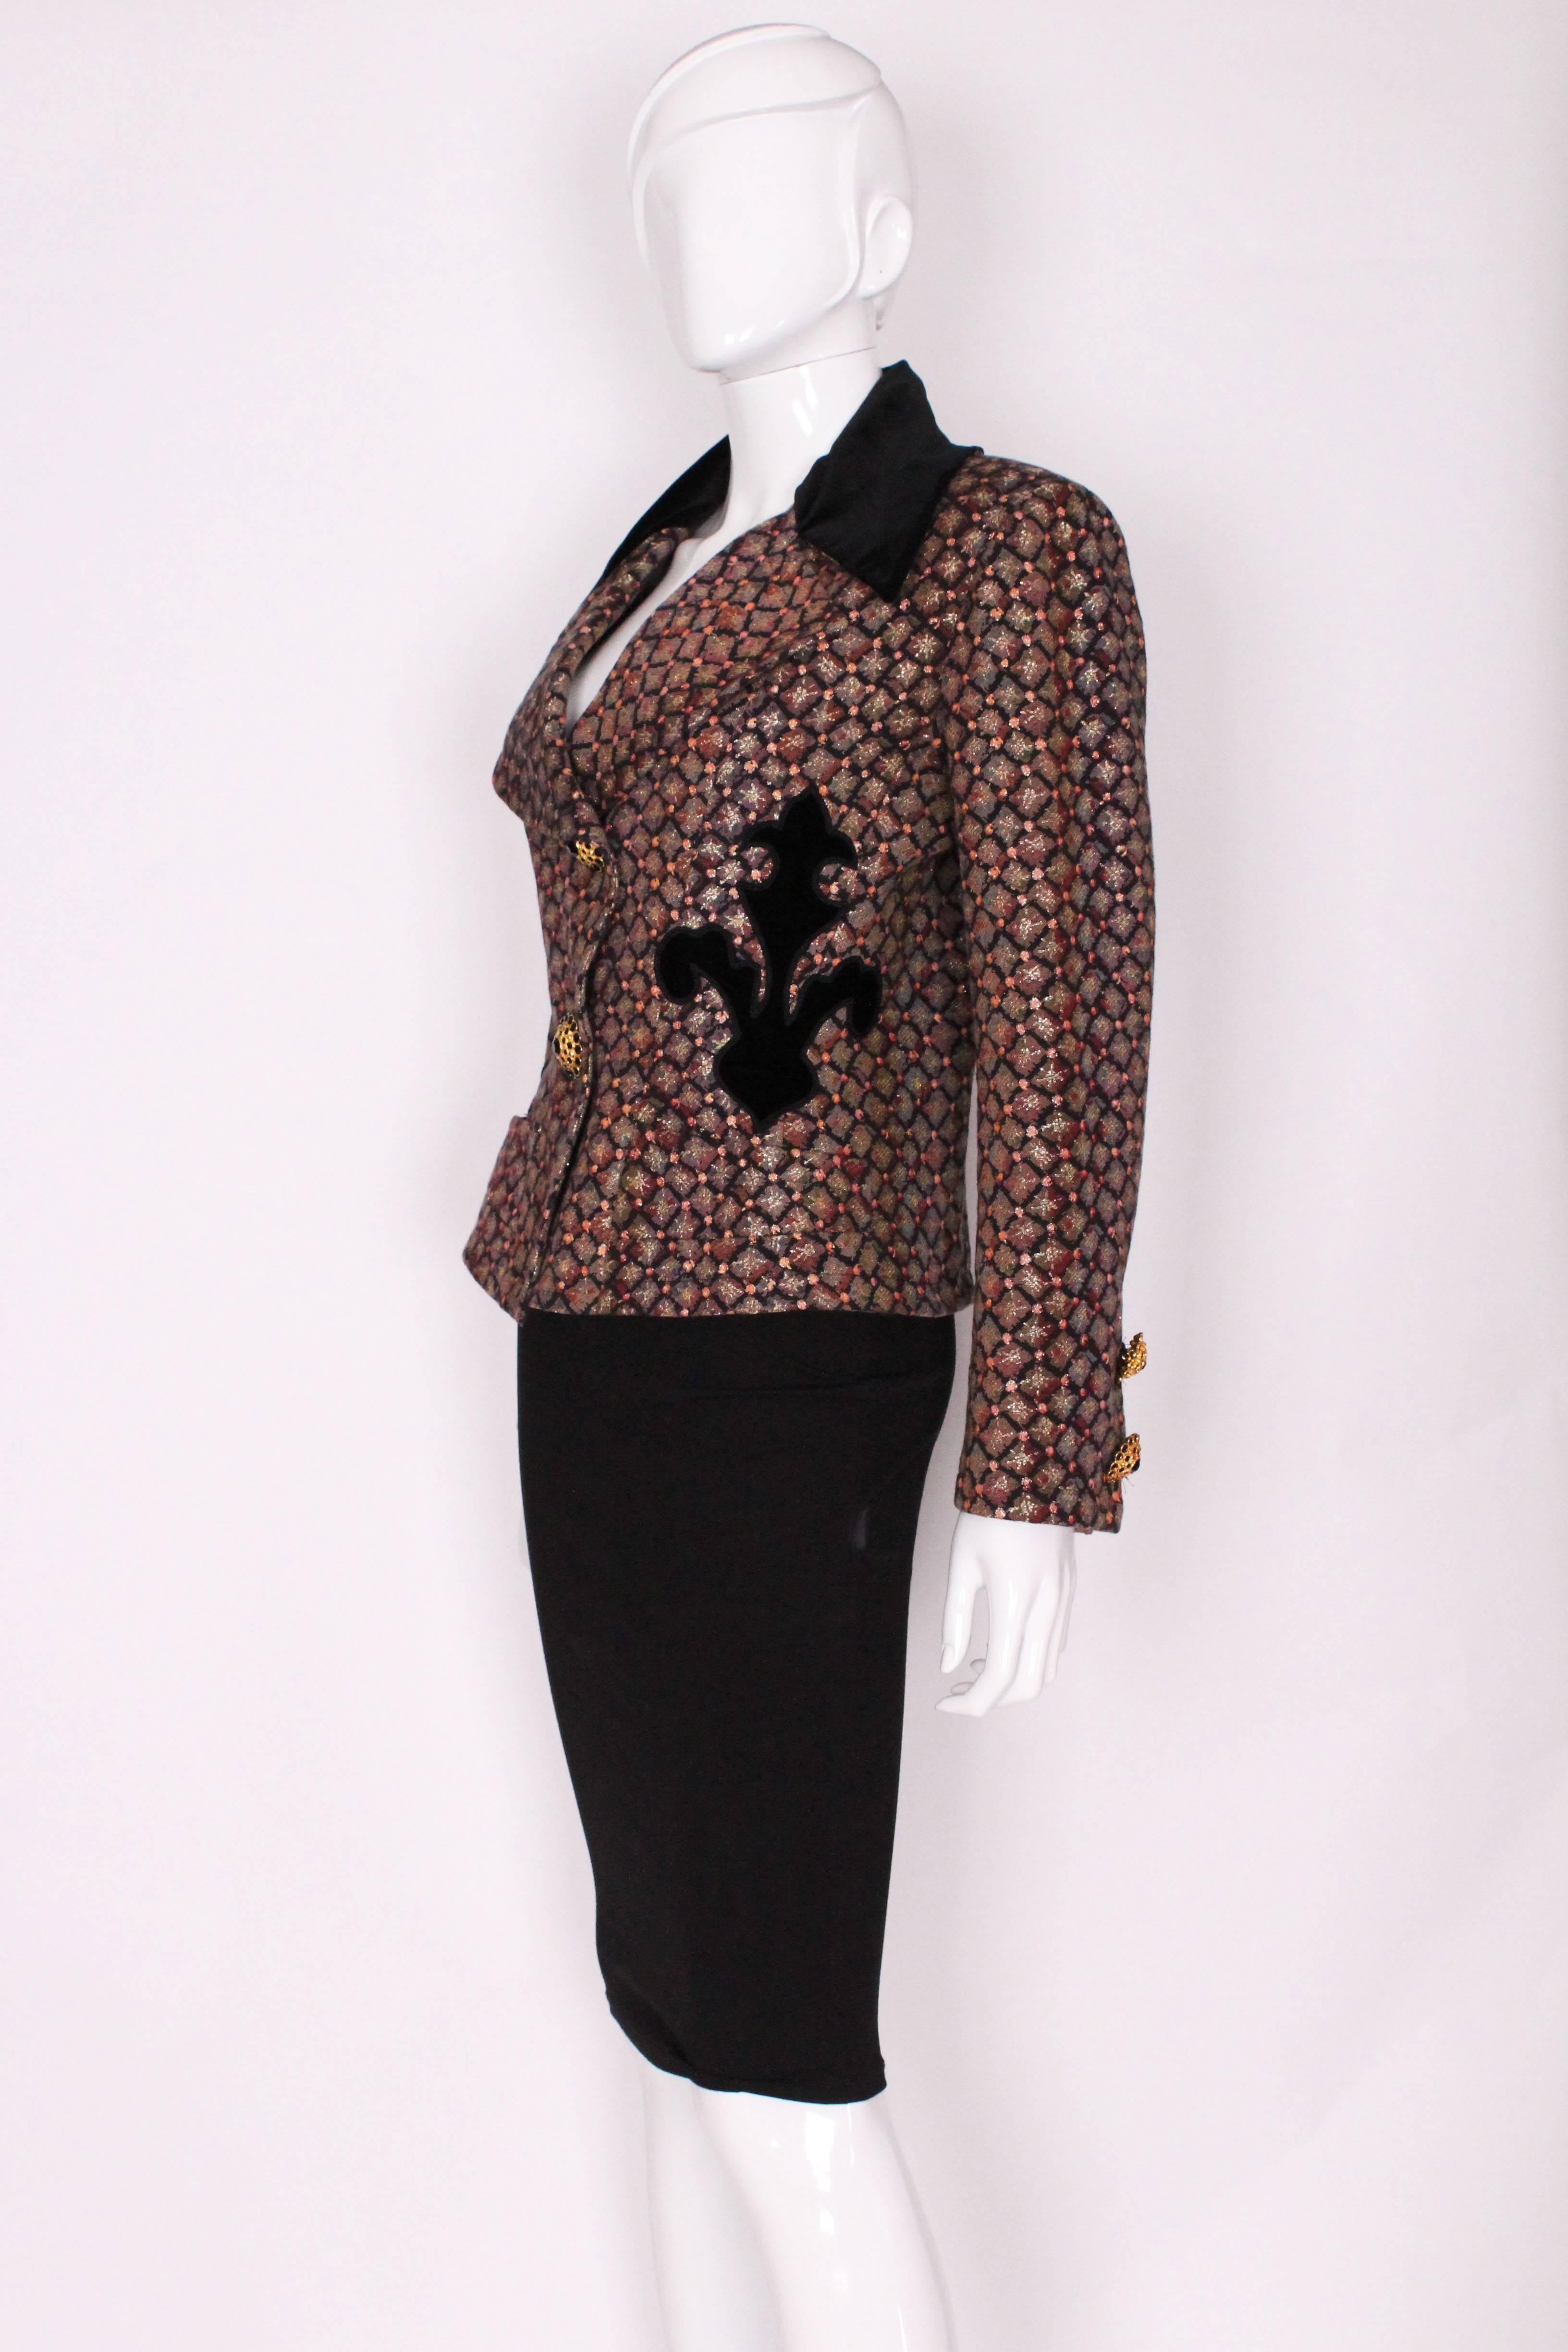 Black A vintage 1980s Christian Lacroix Velvet Collared Brocarde Jacket